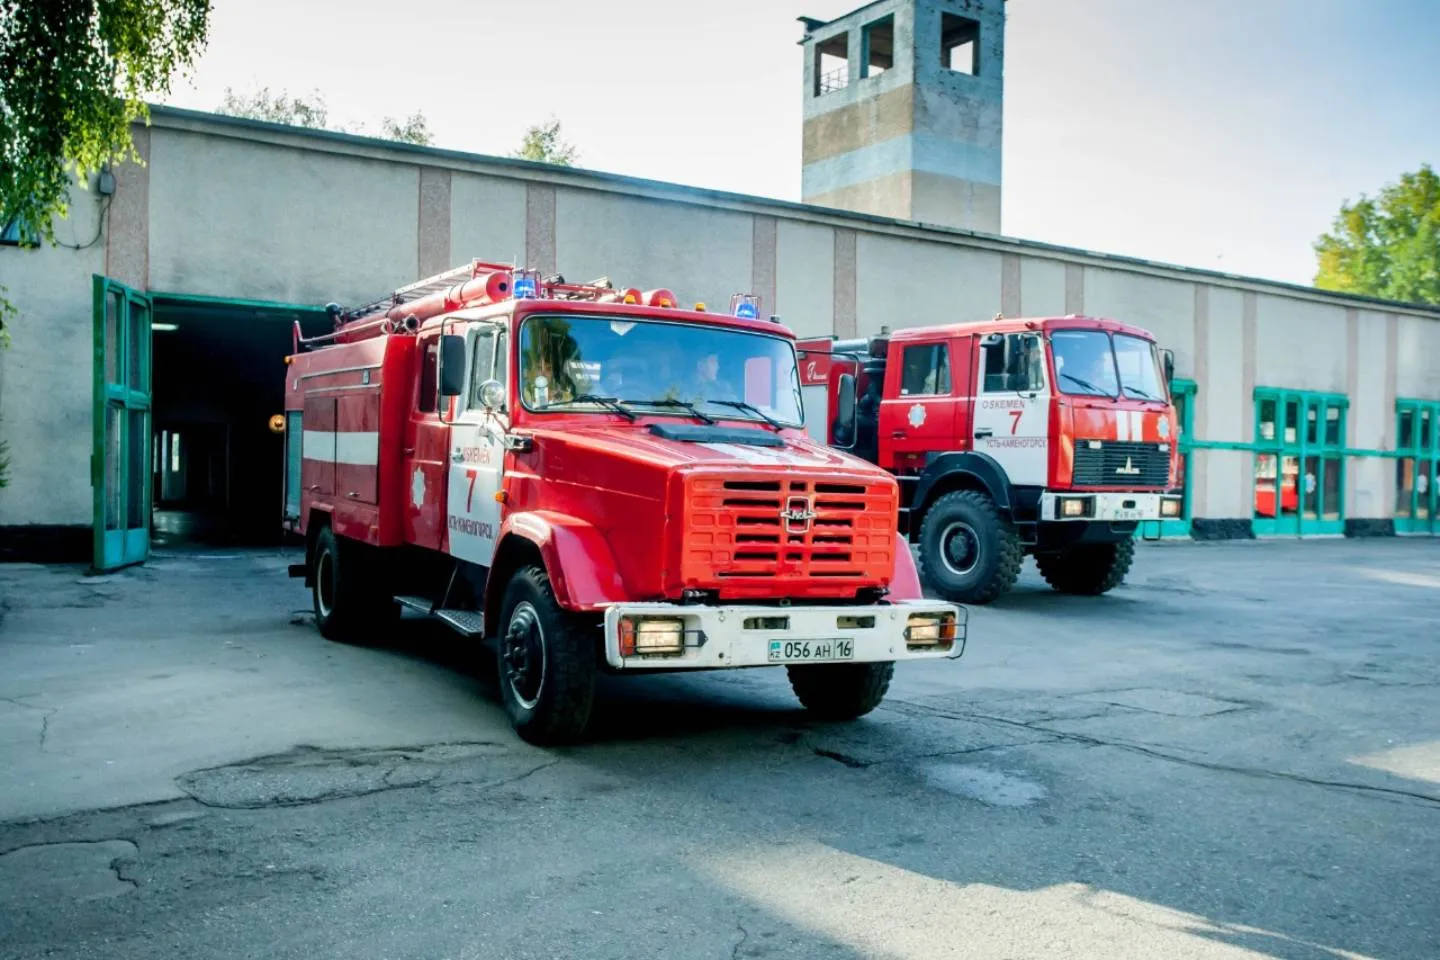 Усть-Каменогорск и ВКО / Спасатели потушили два крупных пожара в ВКО